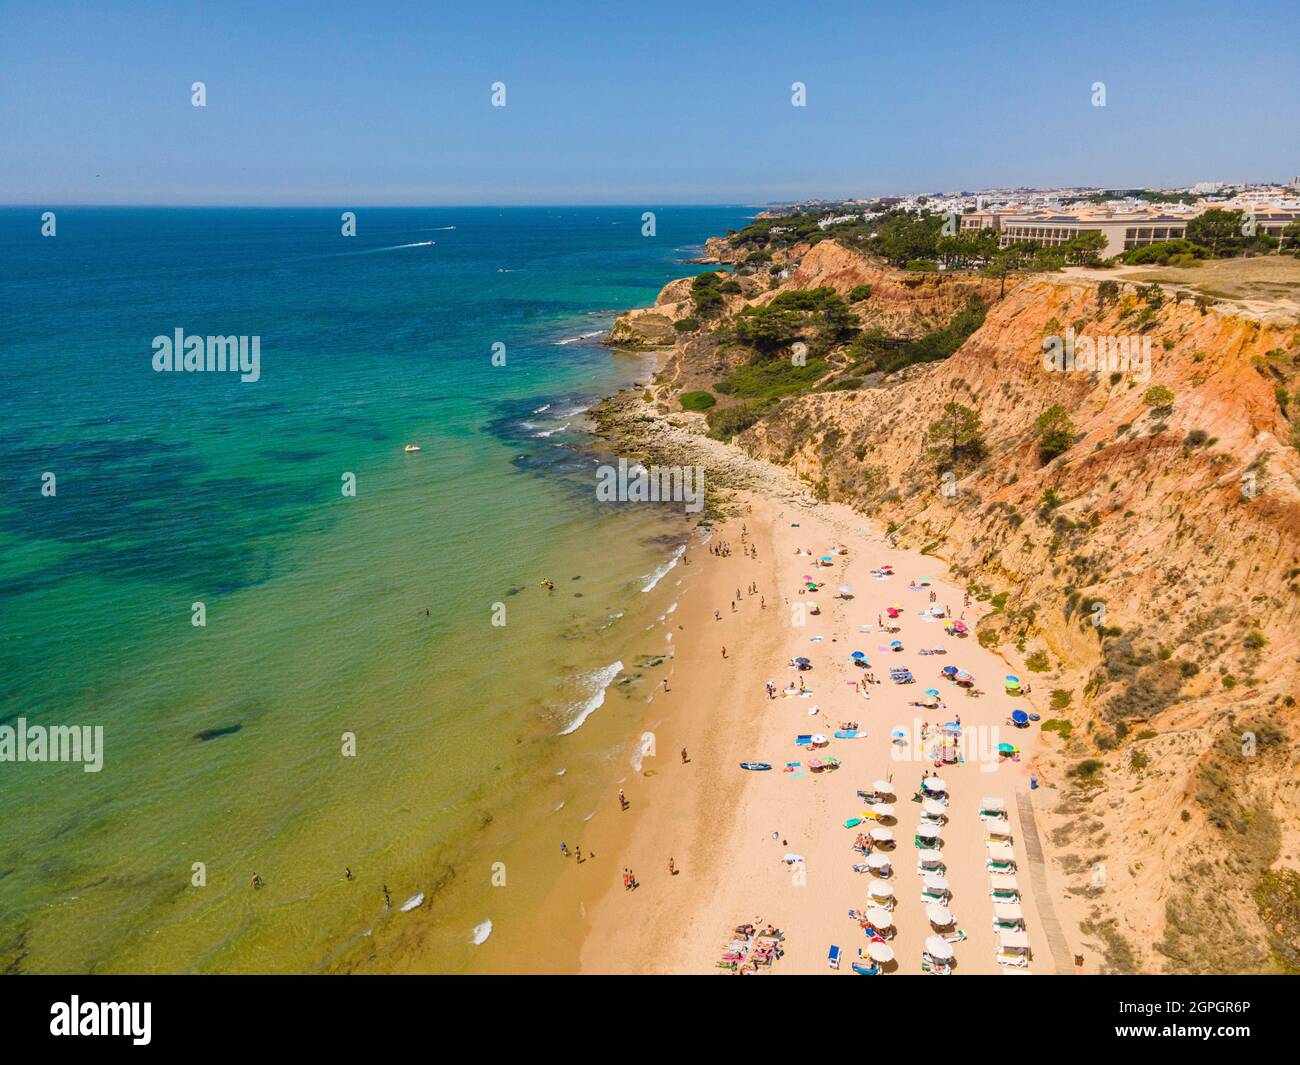 Portugal, Algarve, Albufeira, Praia do Barranco das Belharucas beach (aerial view) Stock Photo